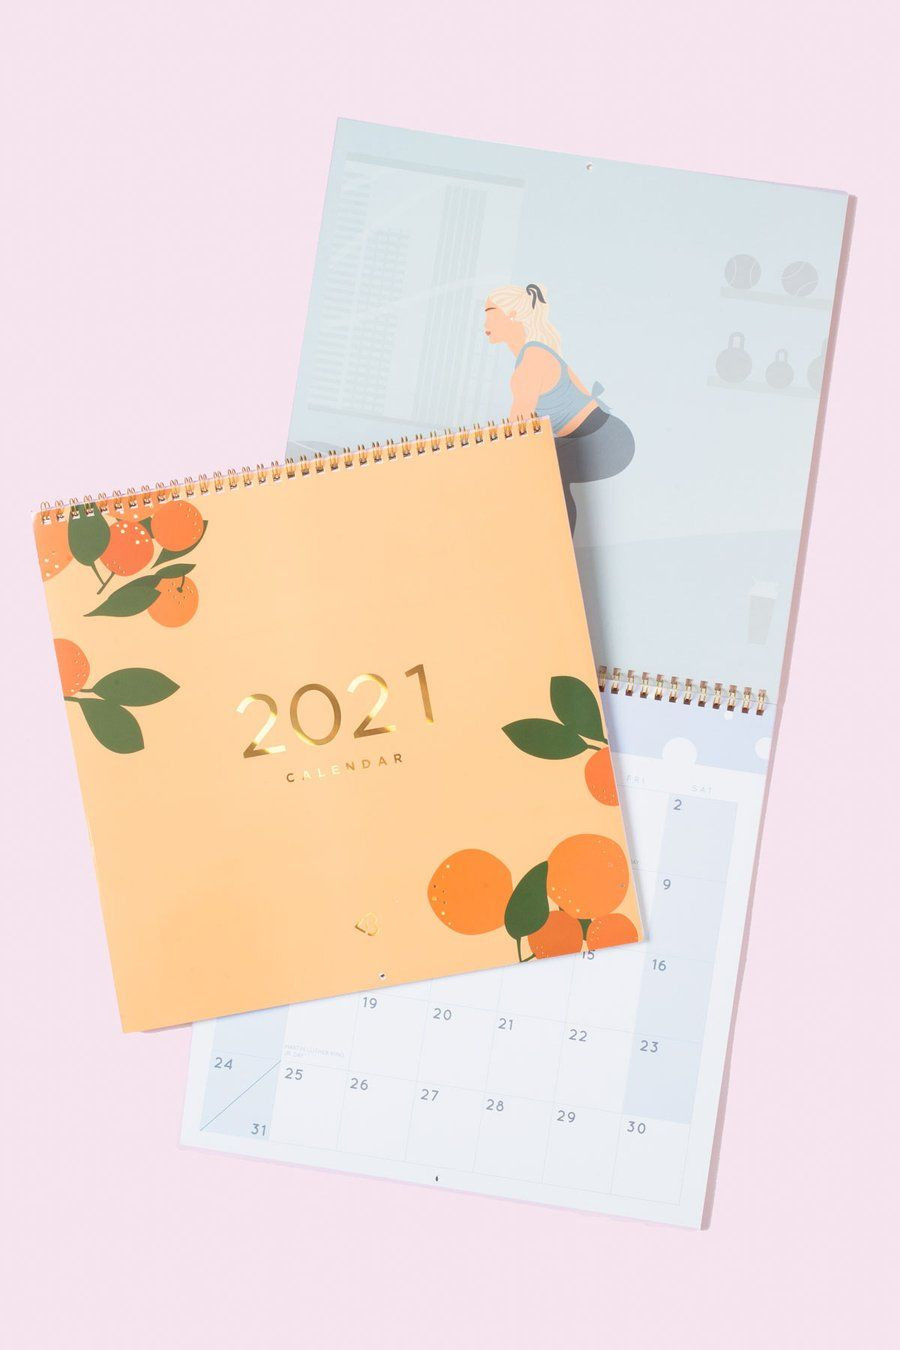 2021 Wall Calendar Disney - Yearmon-Mickey Mouse Printable Calendar 2021